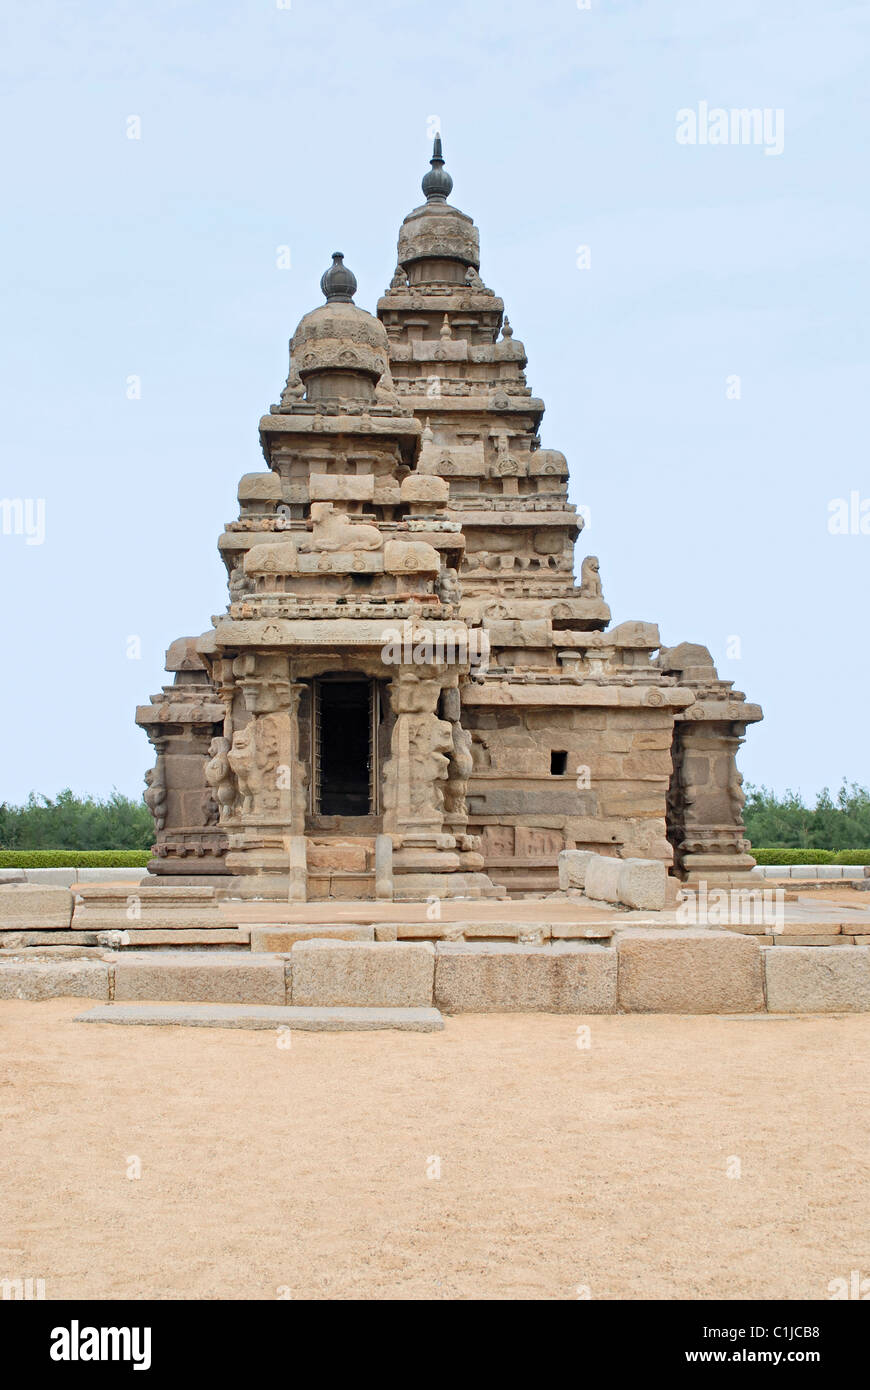 Vue générale du temple du Rivage, Mahabalipuram, Tamilnadu, Inde. Il a été classé comme site du patrimoine mondial de l'UNESCO. Banque D'Images